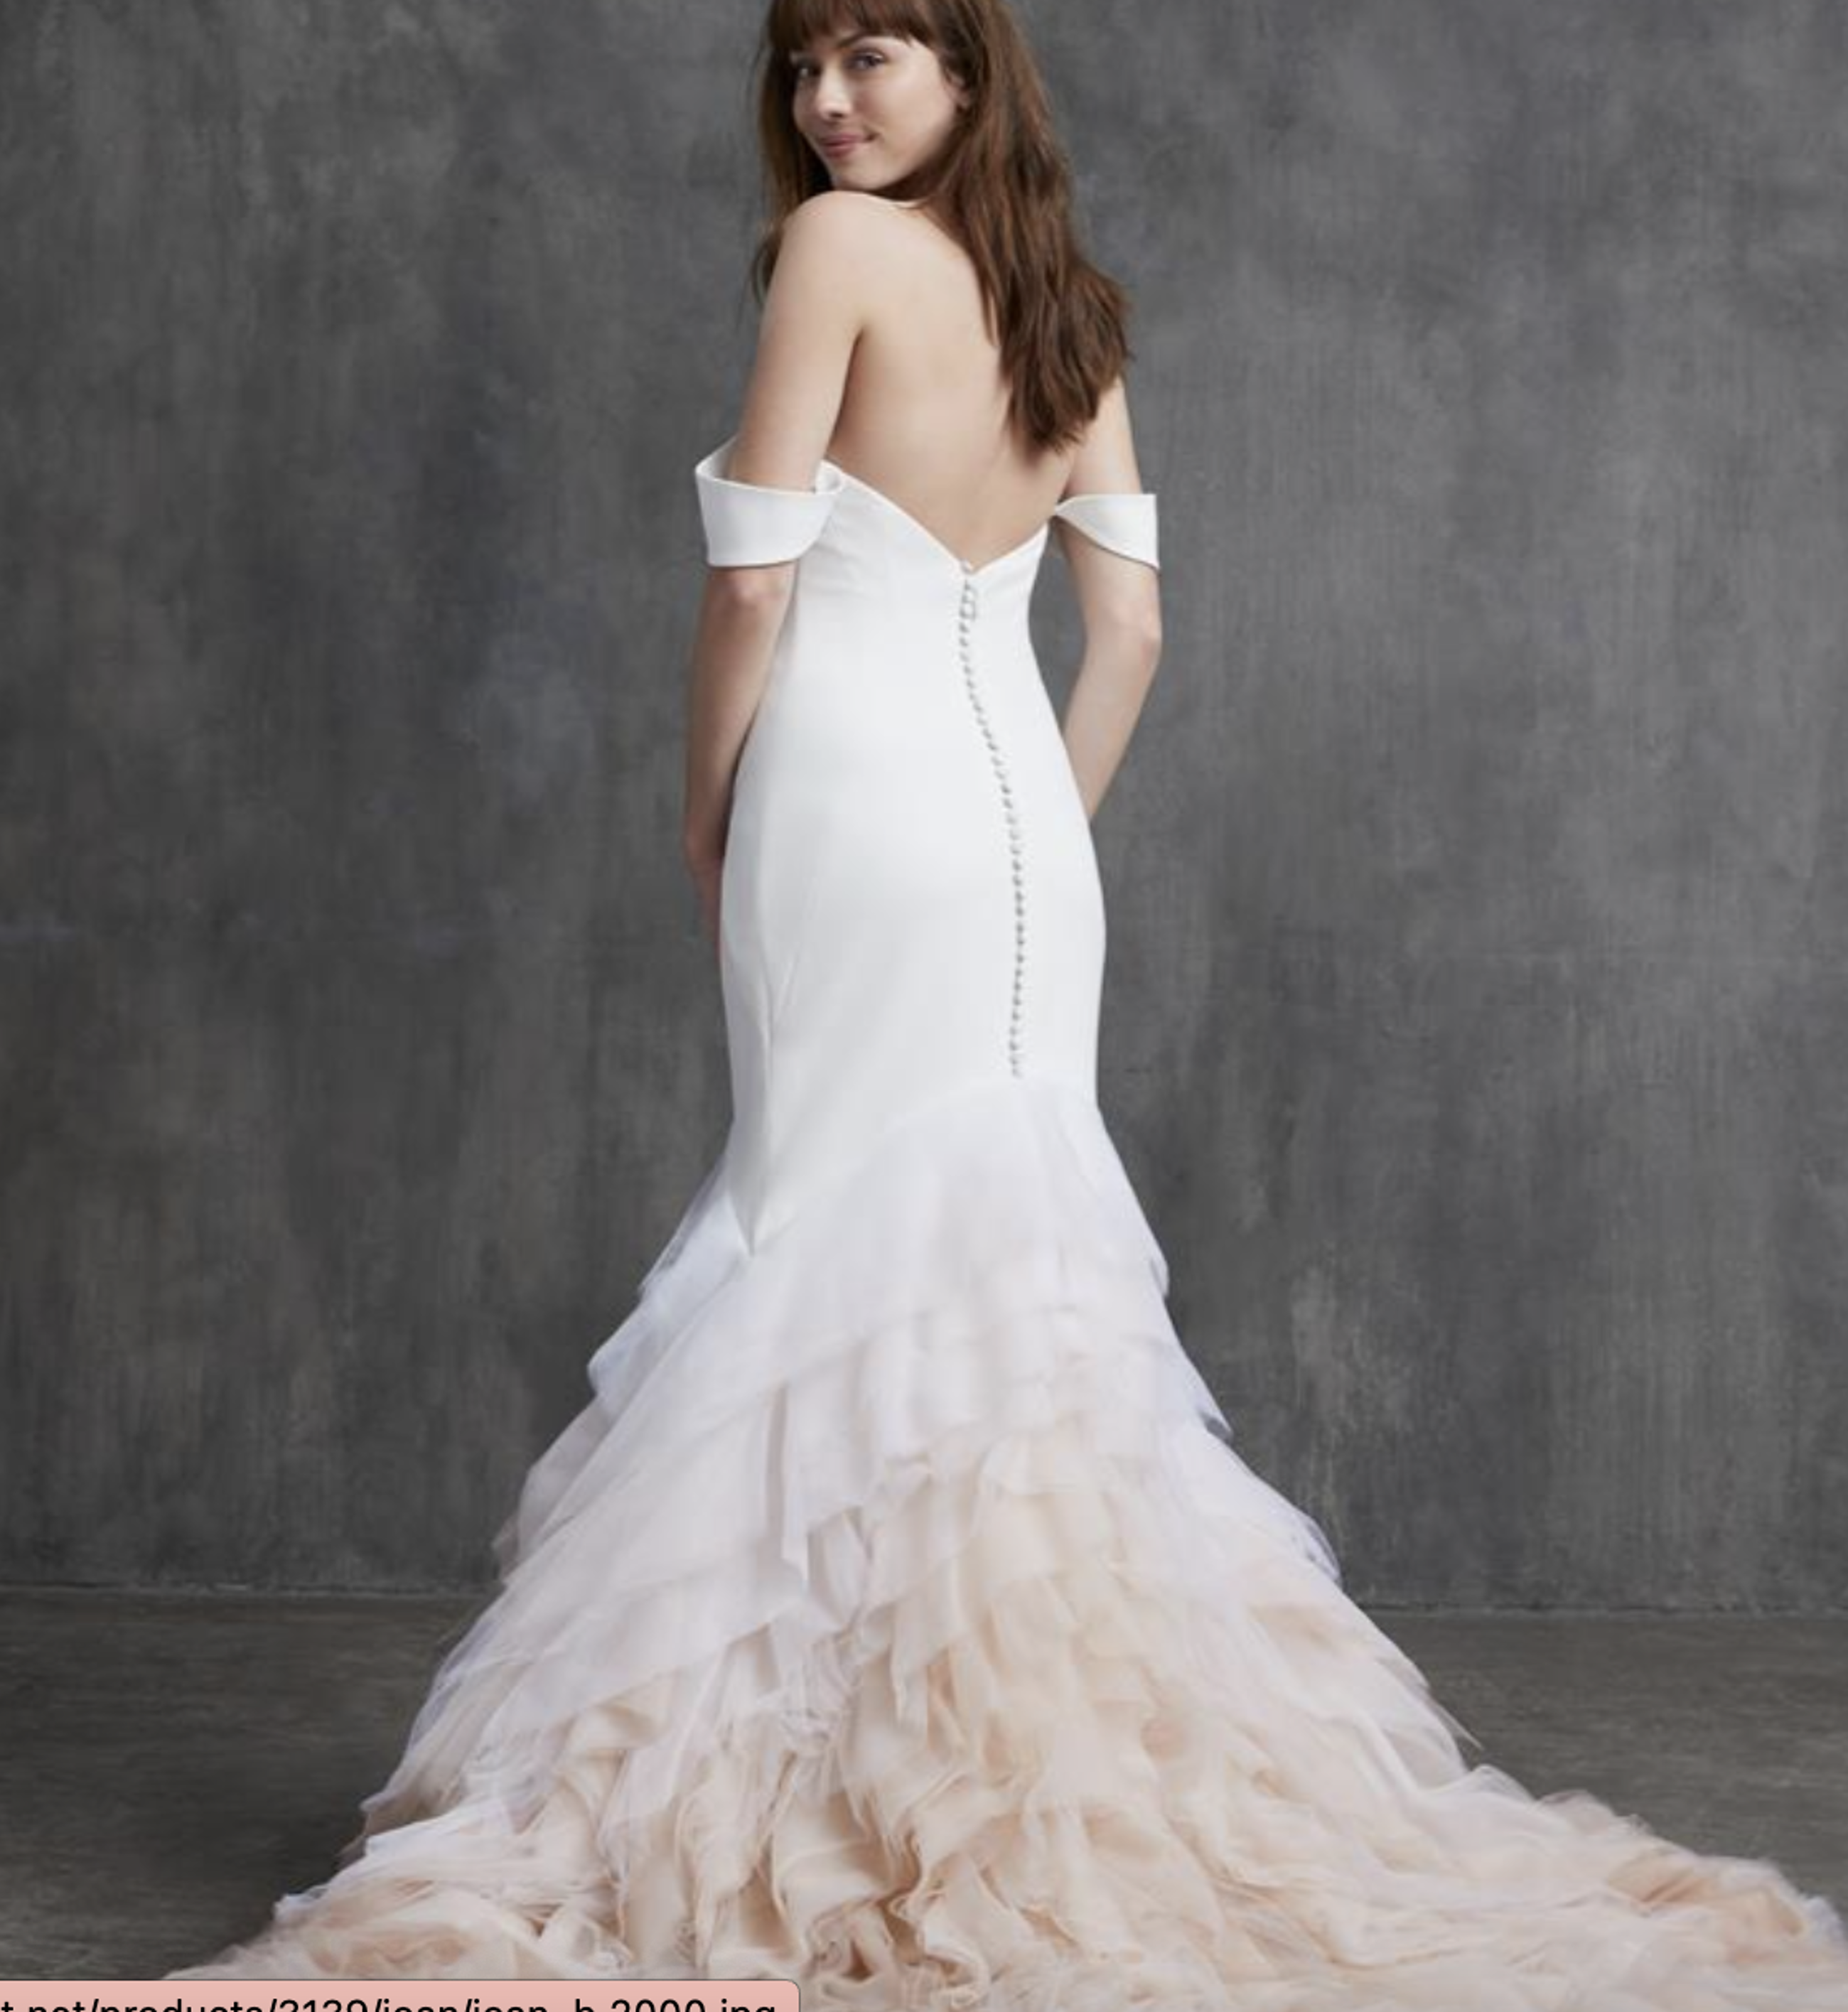 Celebrity Lookalike Wedding Dresses Image